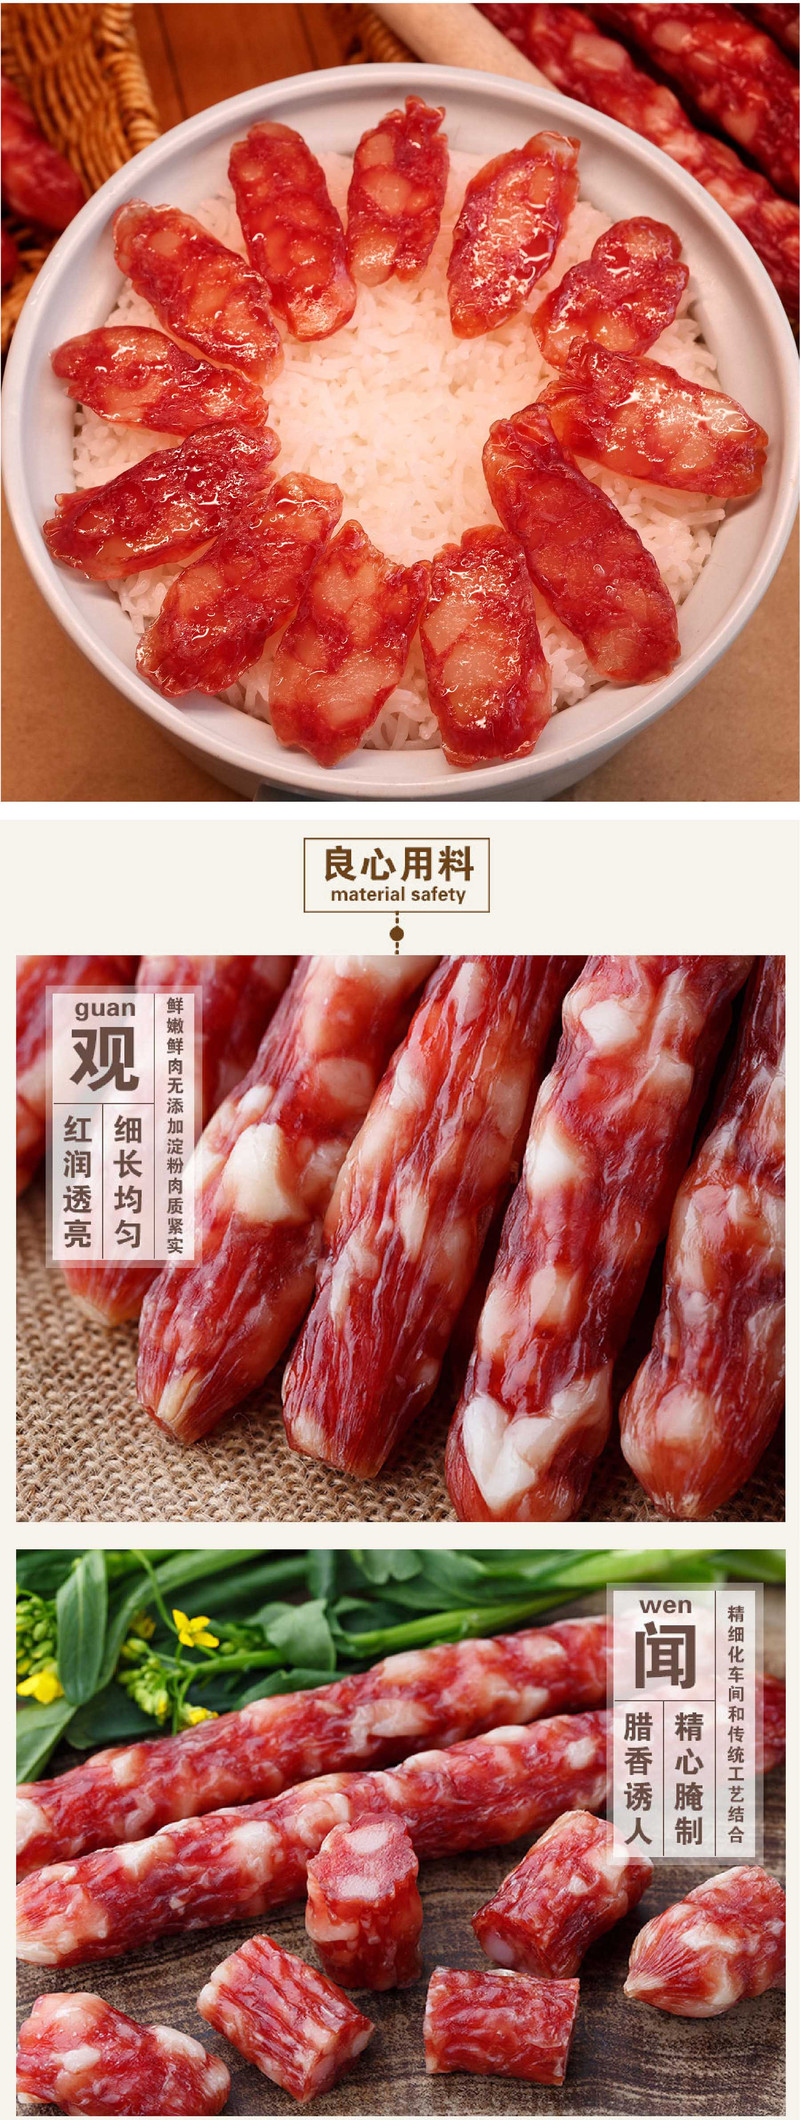  【阳江馆】广式腊肠250克/袋 汇然优品 广东特色 煲仔饭首选材料